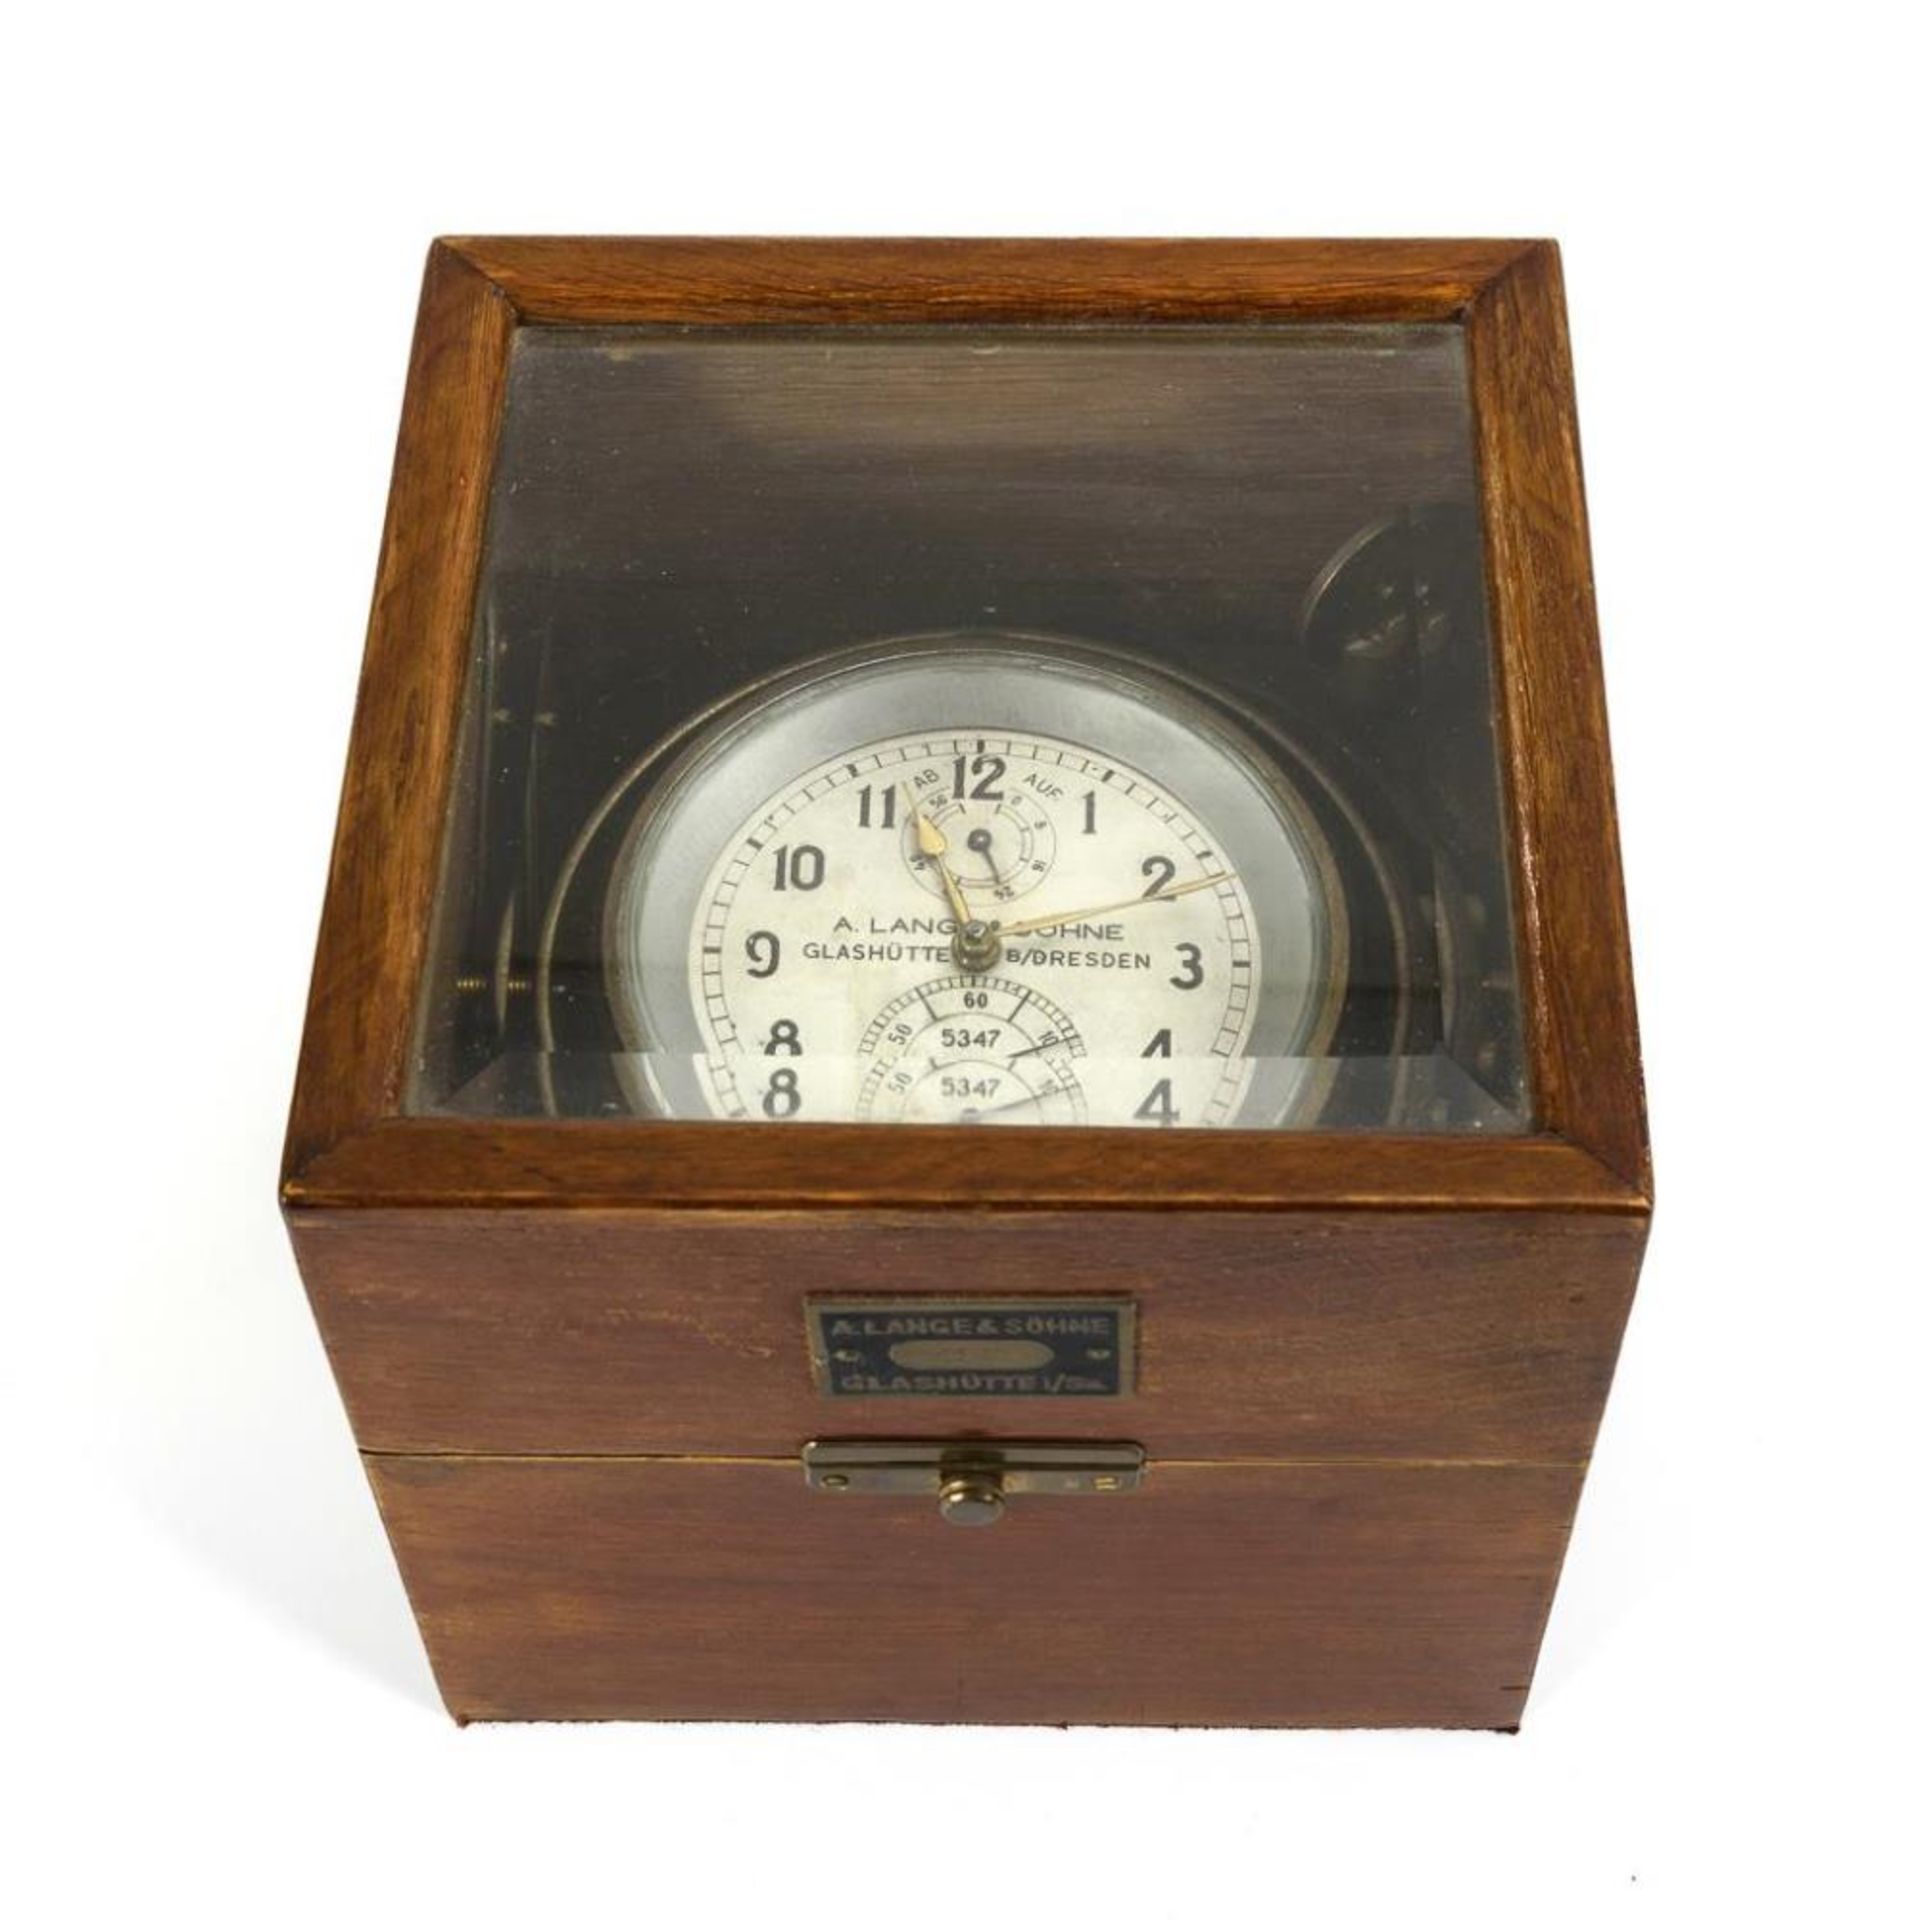 Schiffschronometer mit 56 h Gangreserve. A. Lange & Söhne Glashütte B/Dresden. - Bild 3 aus 6